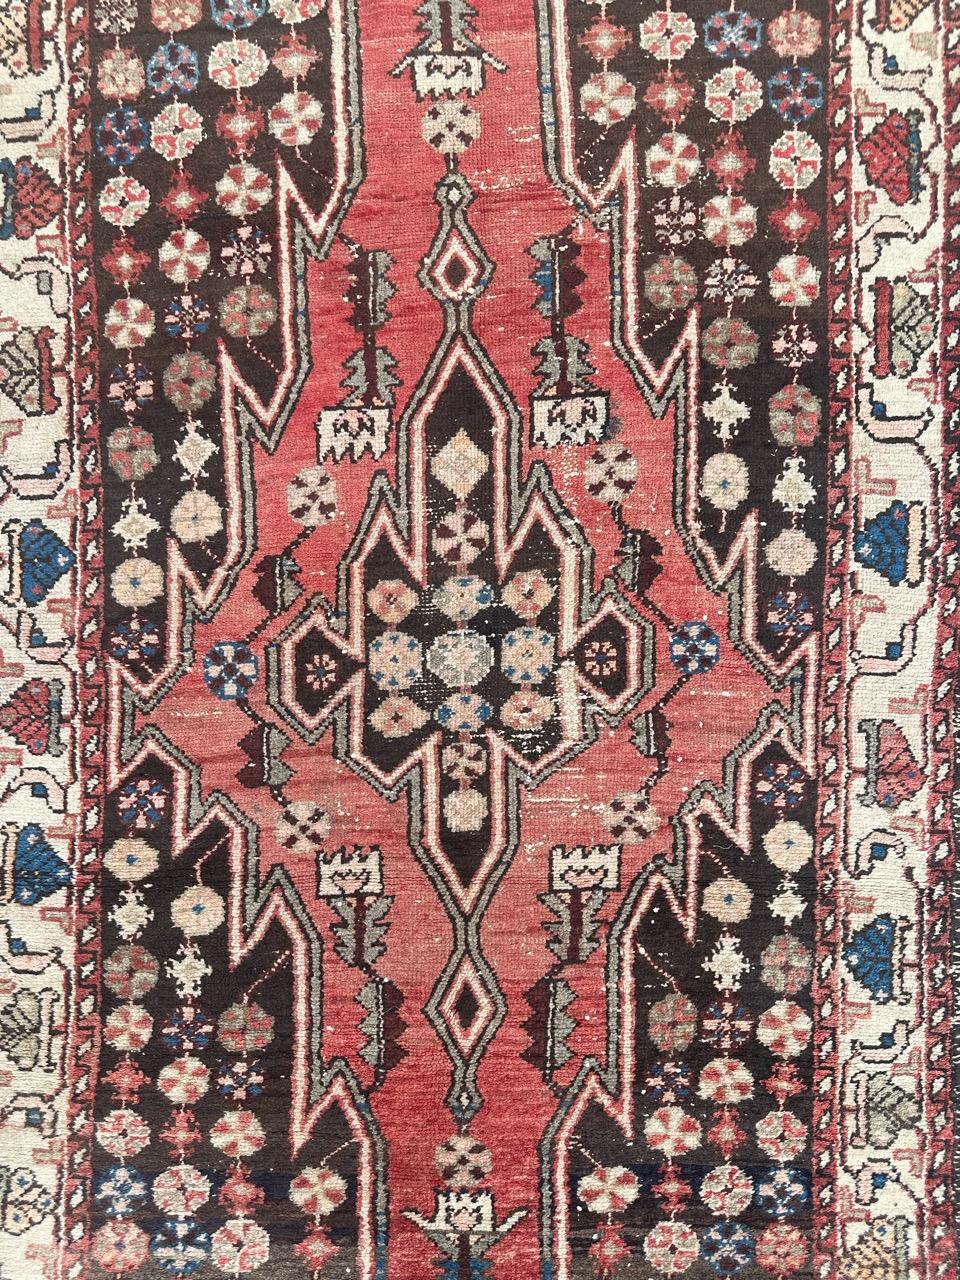 Schöner Mazlaghan-Teppich aus der Mitte des Jahrhunderts mit schönem geometrischem und Tribal-Muster und schönen Farben mit rotem Feld, dunkelbraun, weiß, blau und grün, komplett handgeknüpft mit Wolle auf Baumwollbasis. Abnutzungserscheinungen